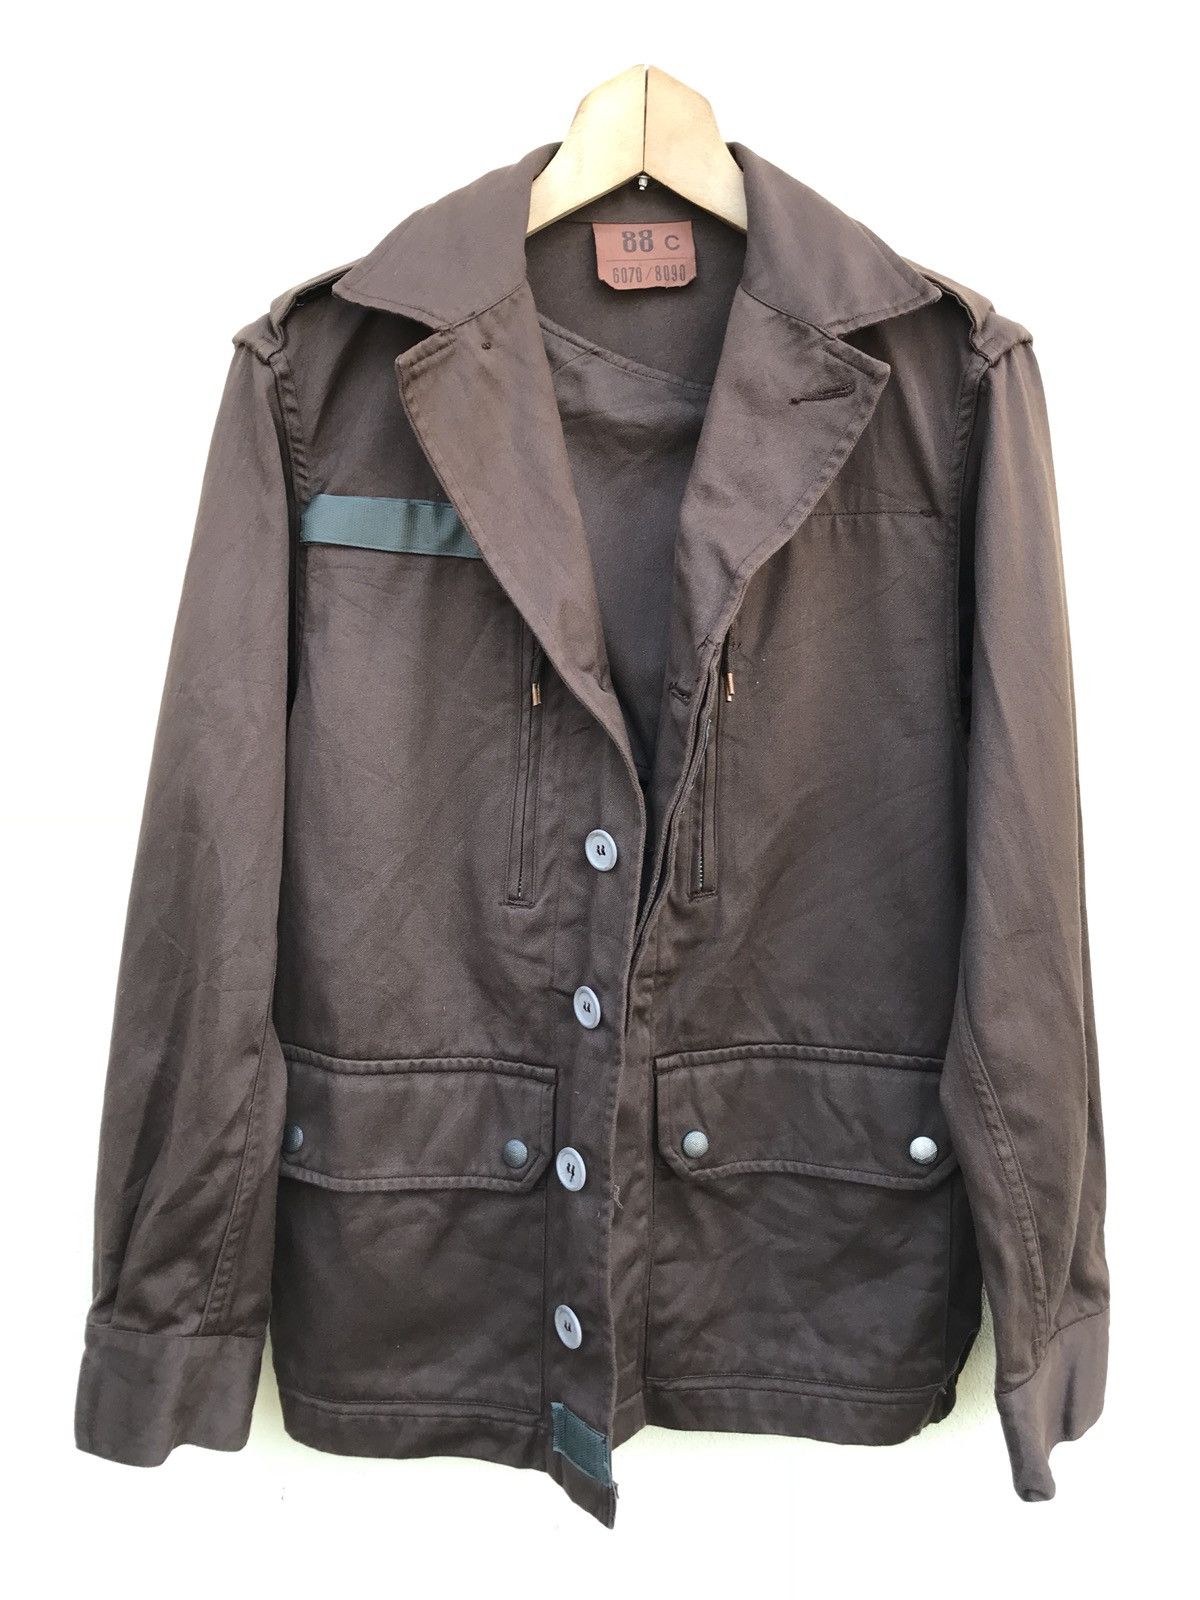 Vintage Vintage sapivog uxegney jacket 1984 | Grailed